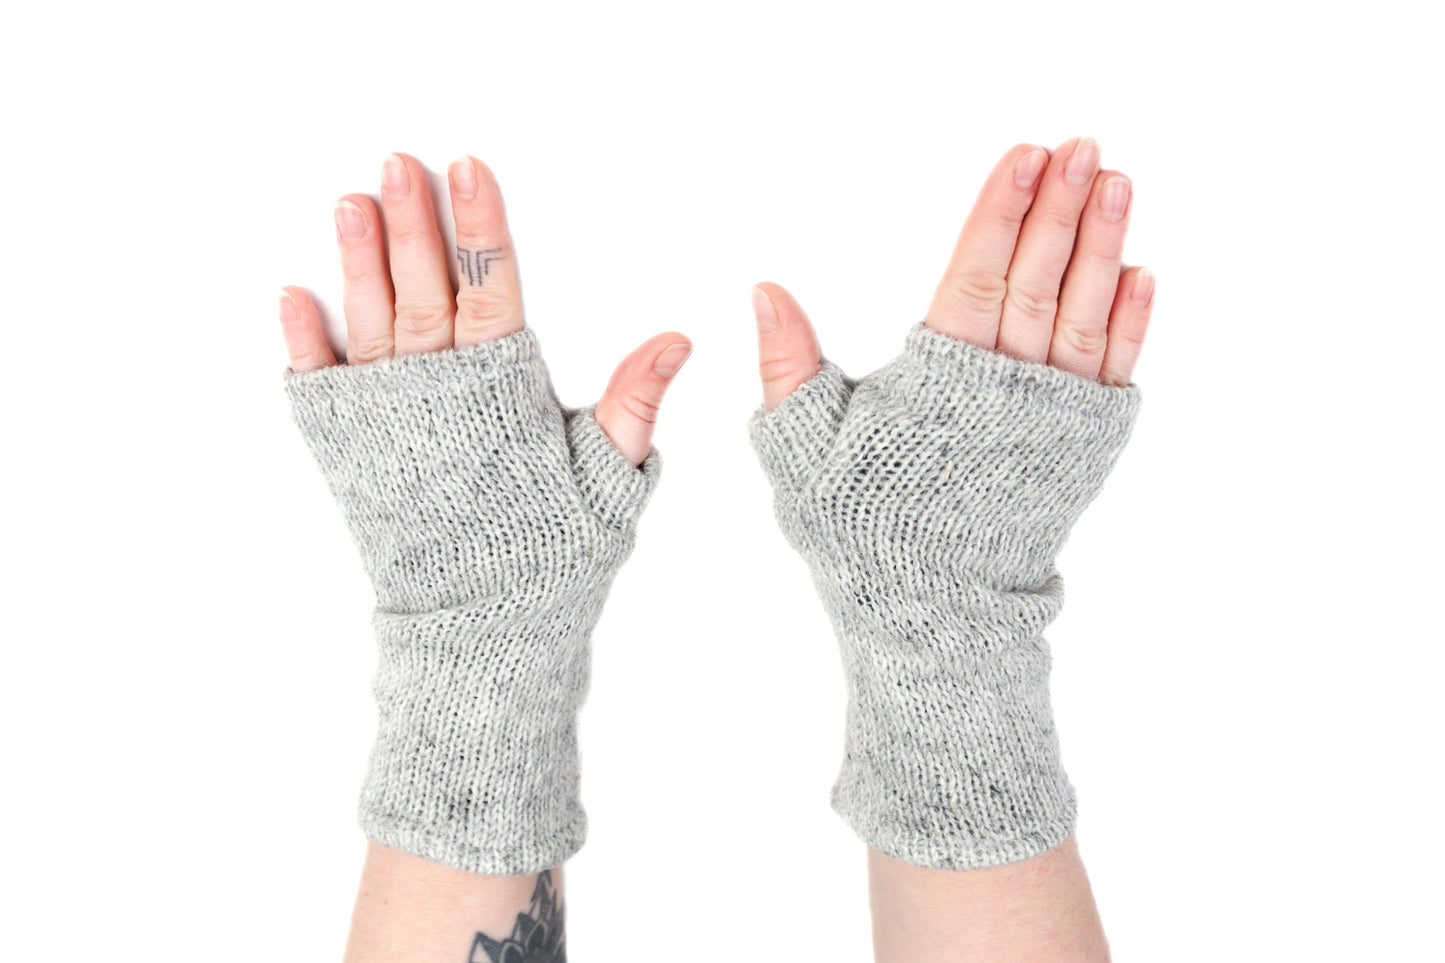 Fleece Lined Knitted Wrist Warmers - Light Grey